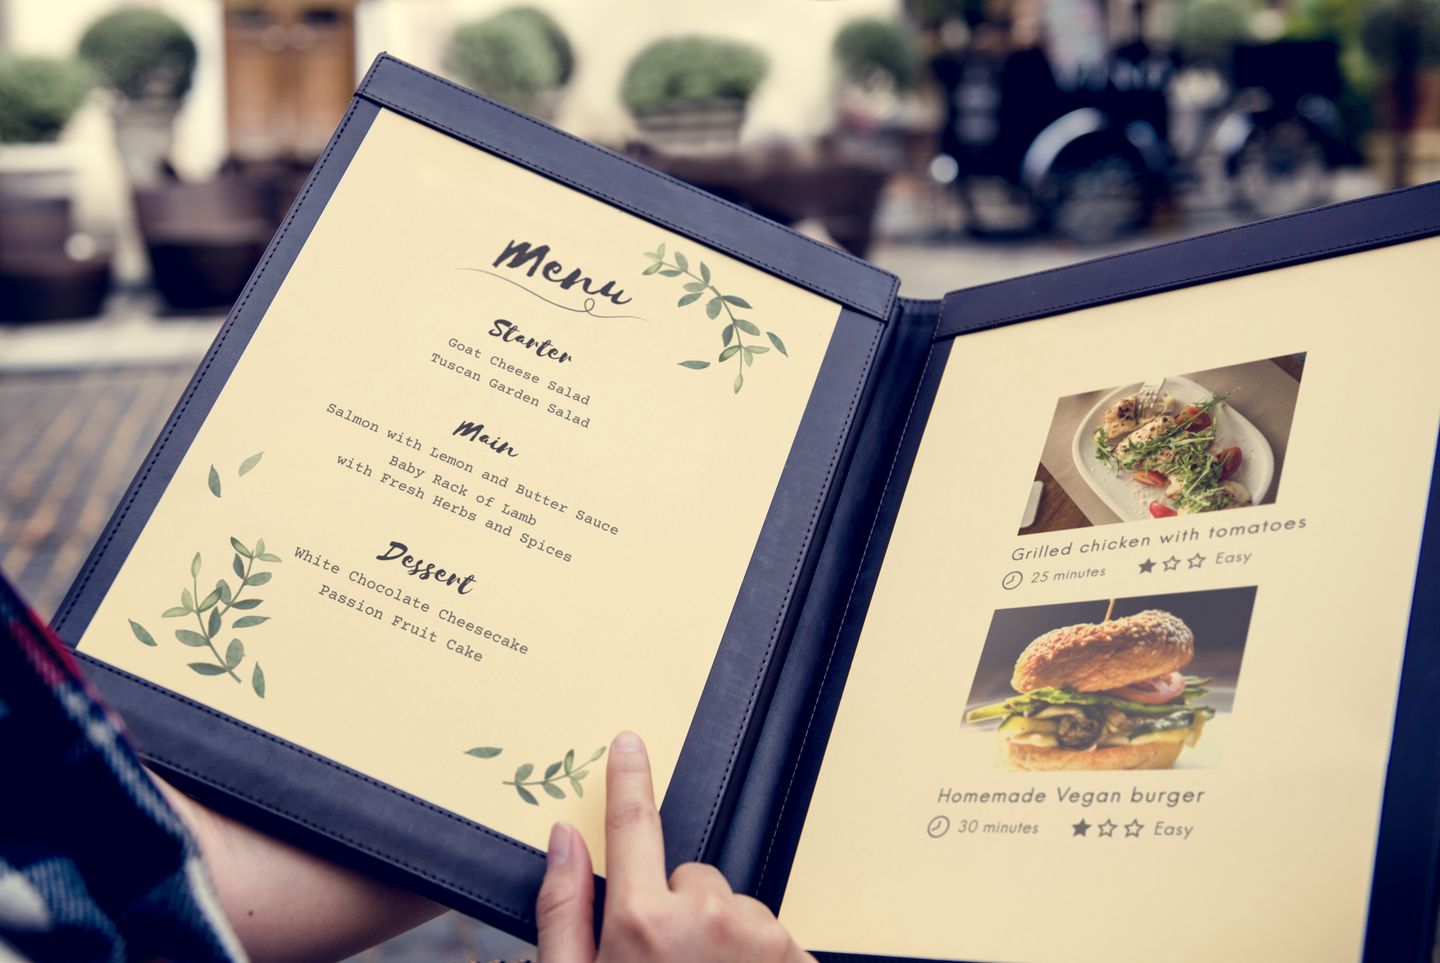 Fungsi daftar menu bagi seluruh karyawan di restoran memiliki arti tersendiri. Fungsi menu bagi tim dapur berbeda dengan fungsi menu bagi tim pramusaji.